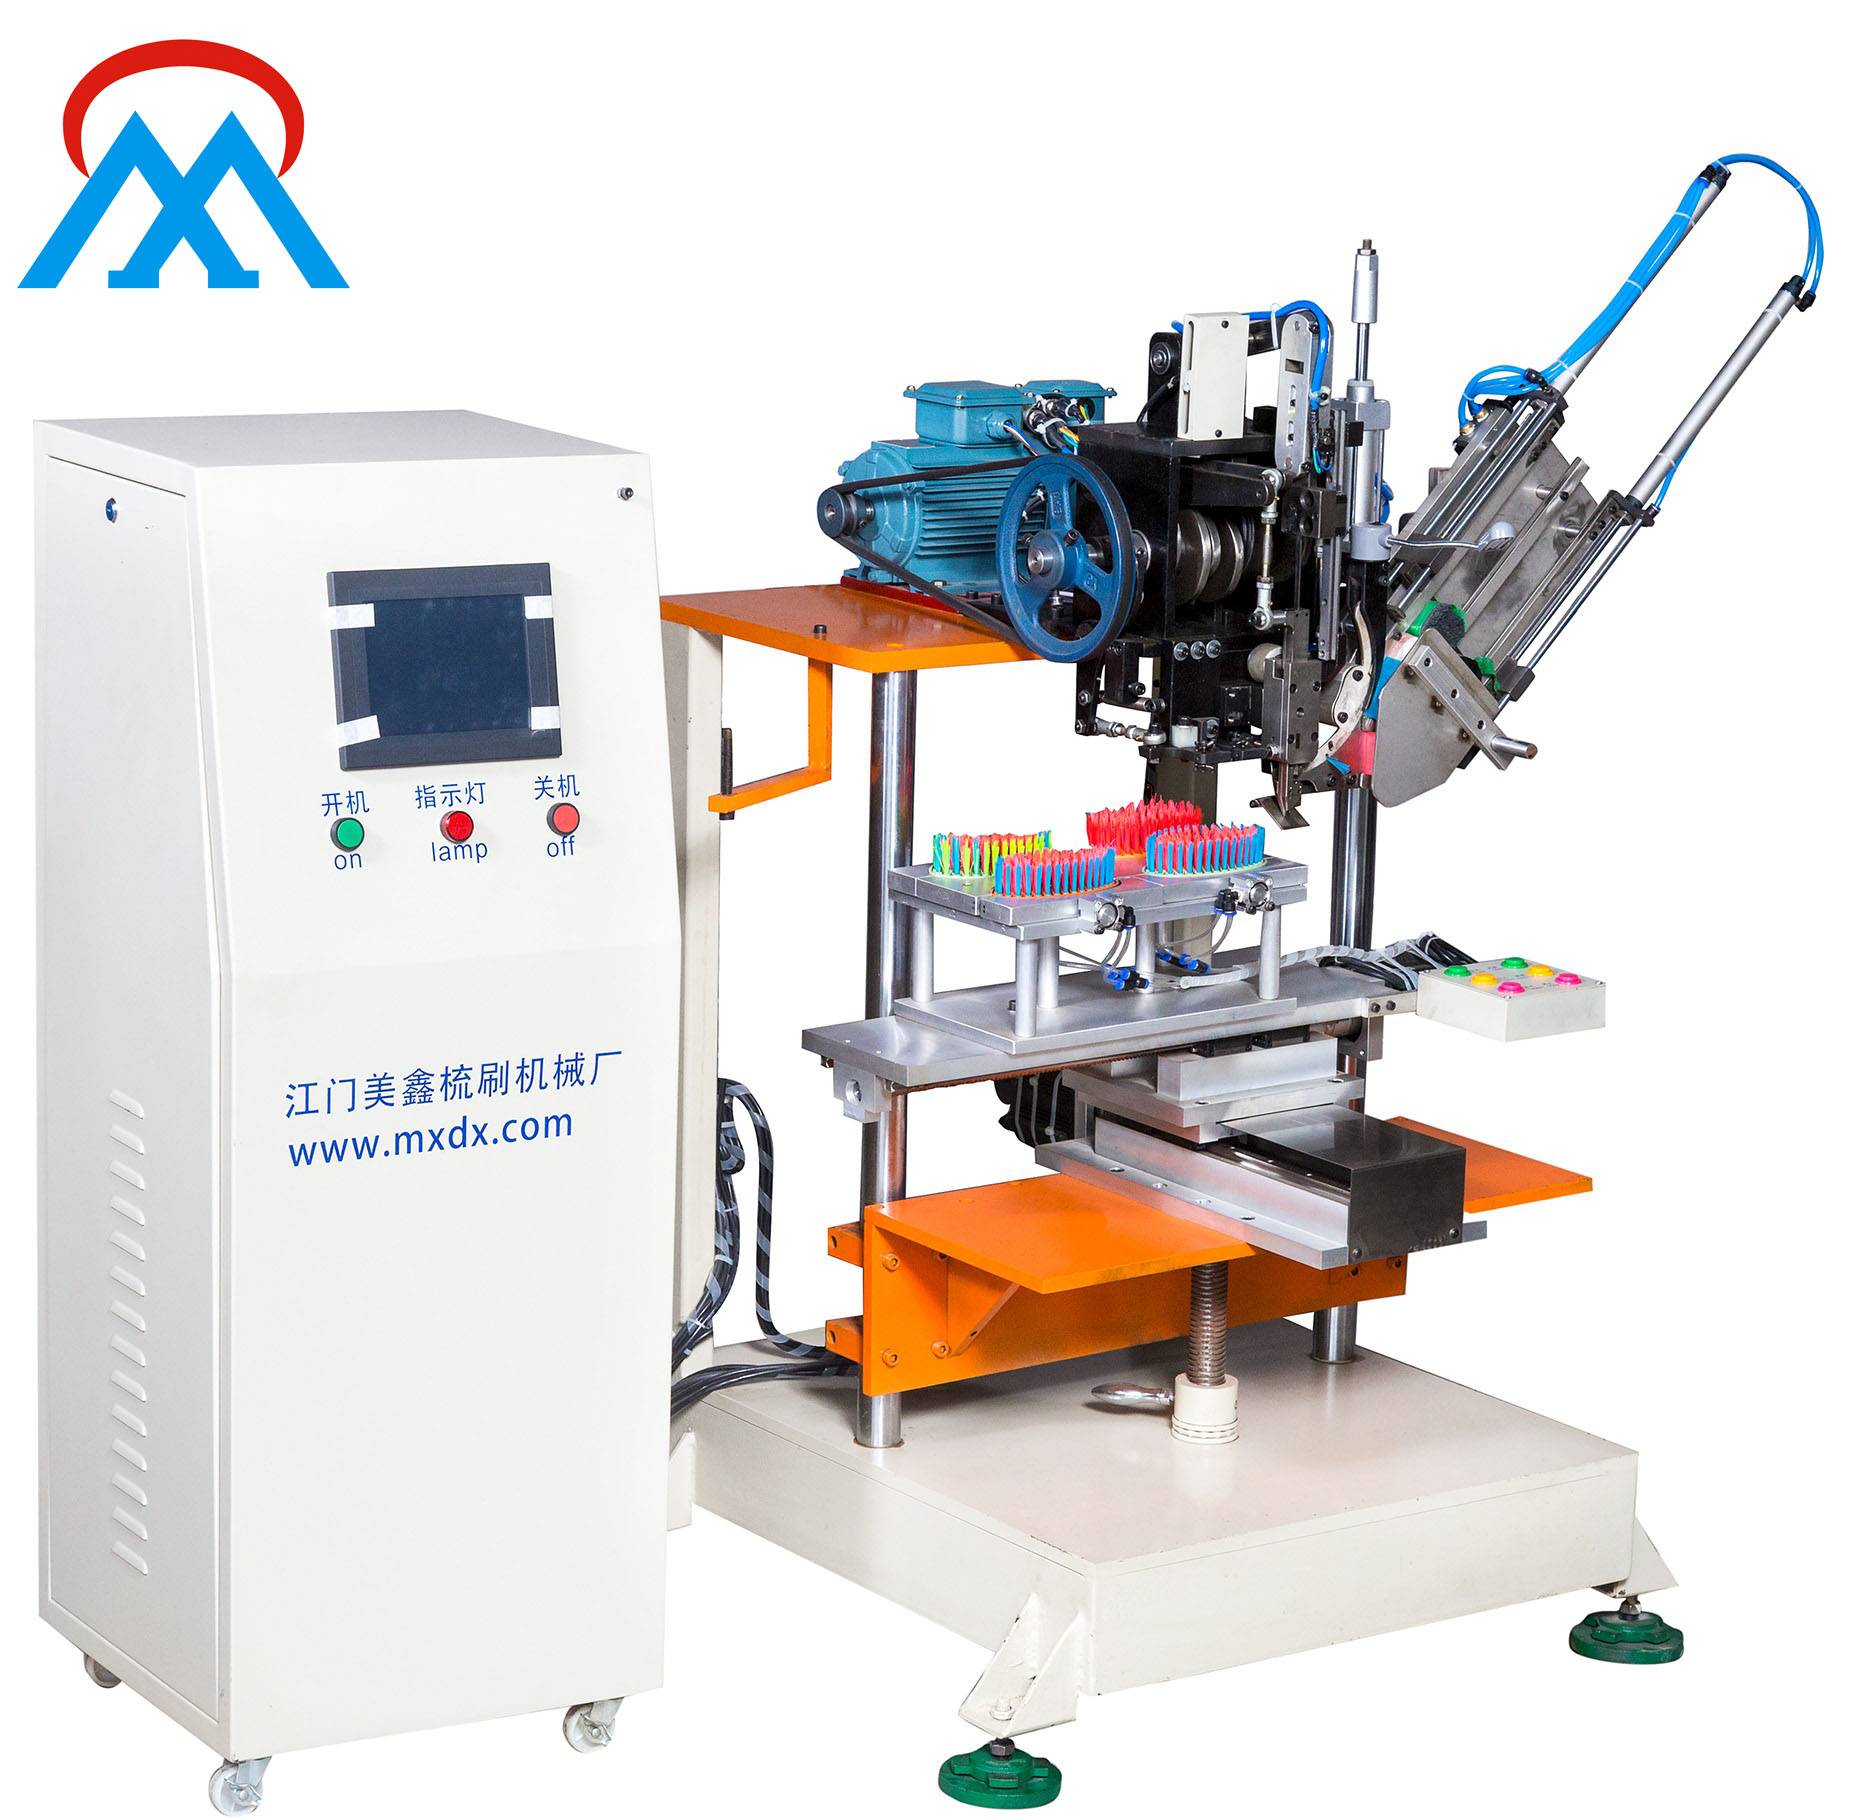 Mesin pembuat sikat Meixin dipersonalisasi untuk industri